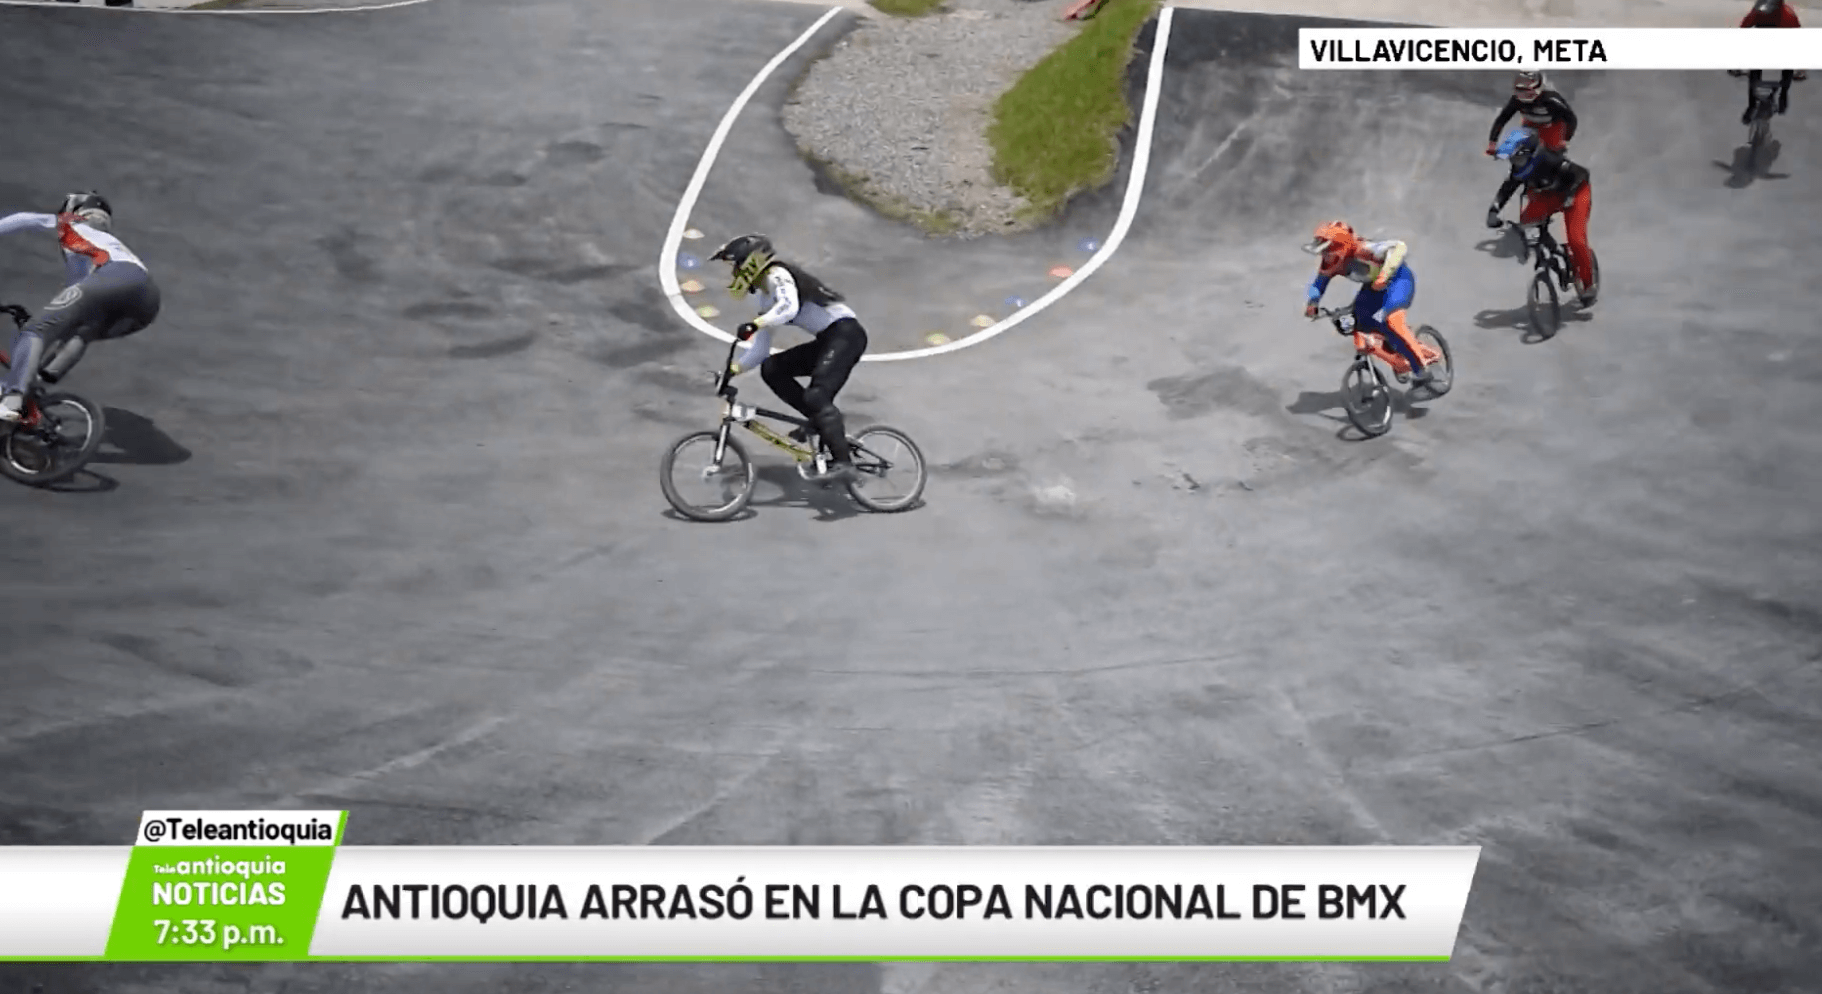 Antioquia arrasó en la Copa Nacional de BMX